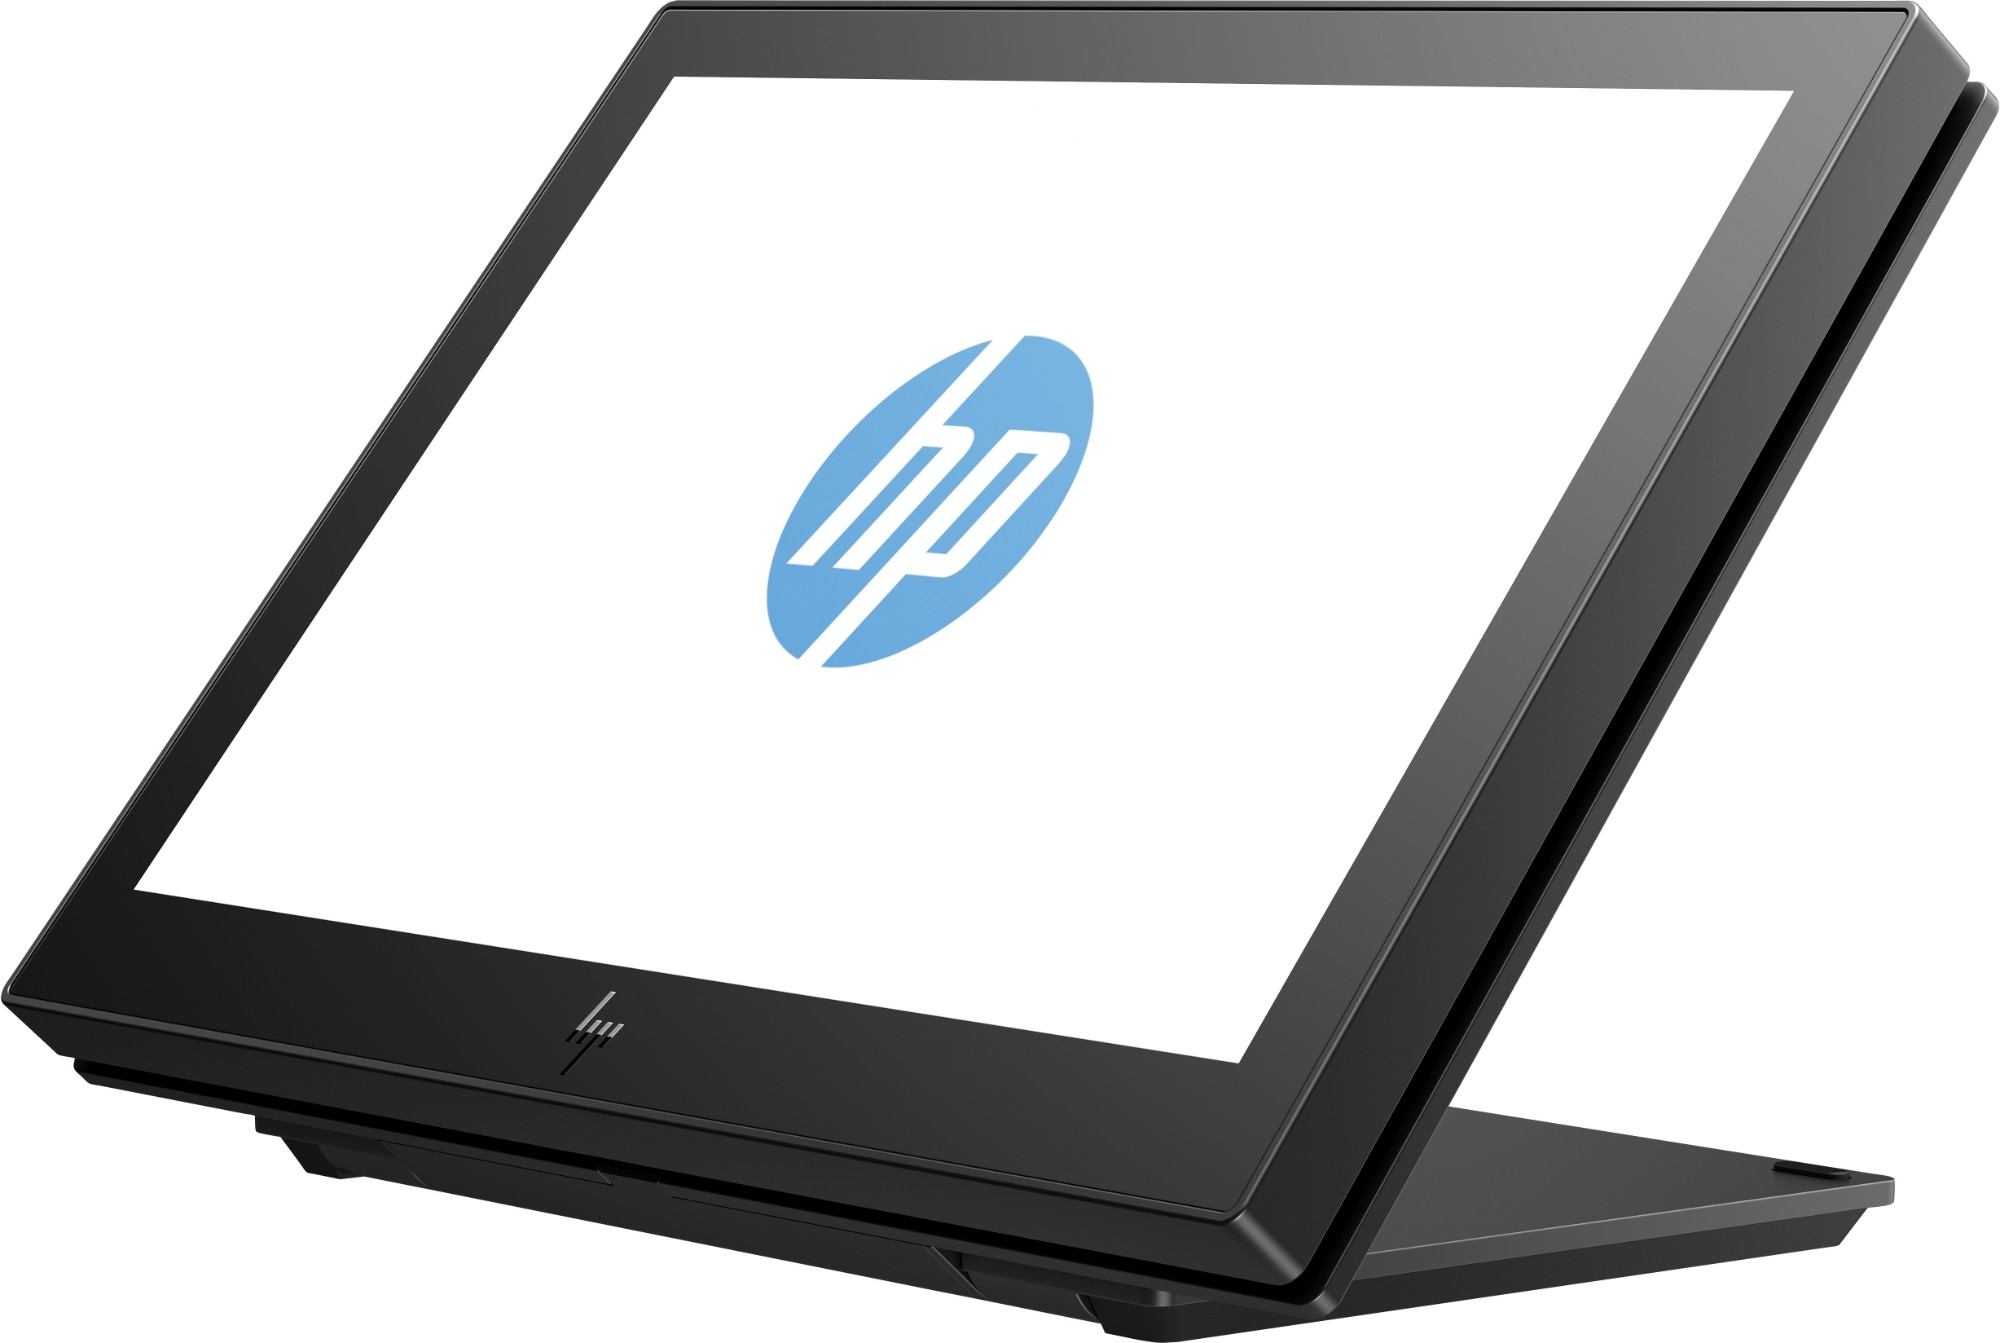 HP Engage One 10.1-inch Display VESA Plate Kit